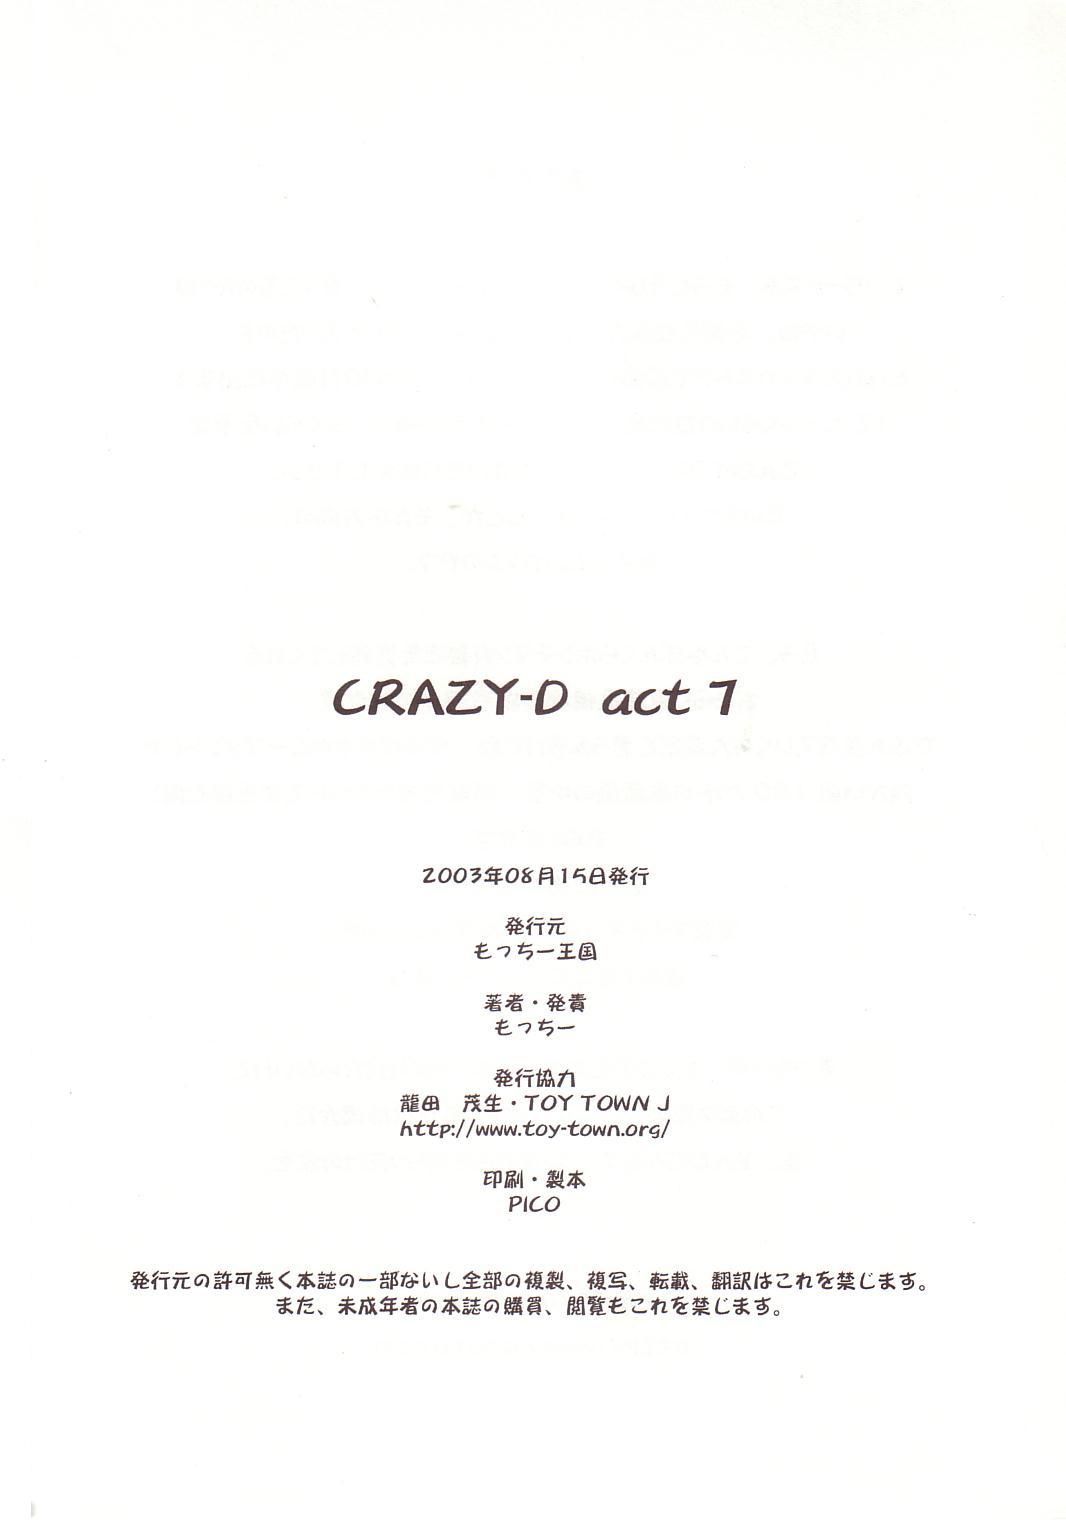 【モッチー】Crazy-DAct 07